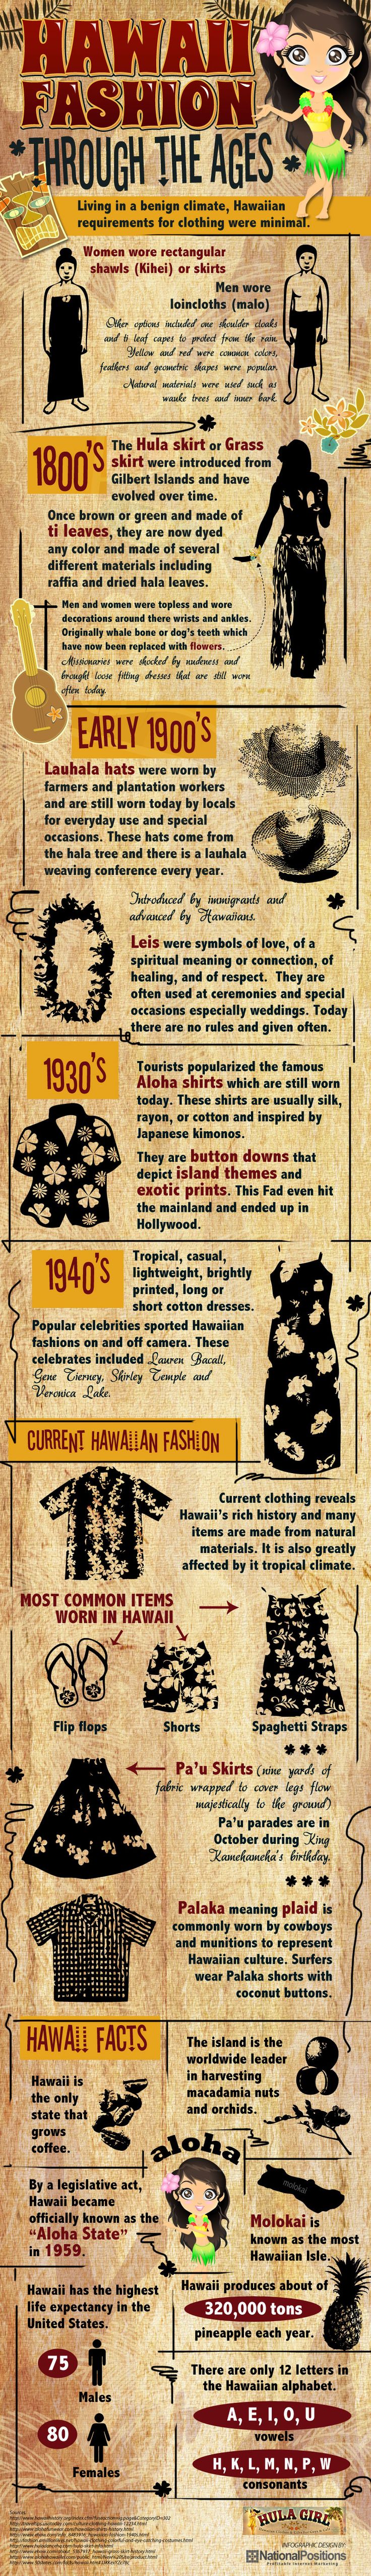 Hawaiian Fashion Through the Ages